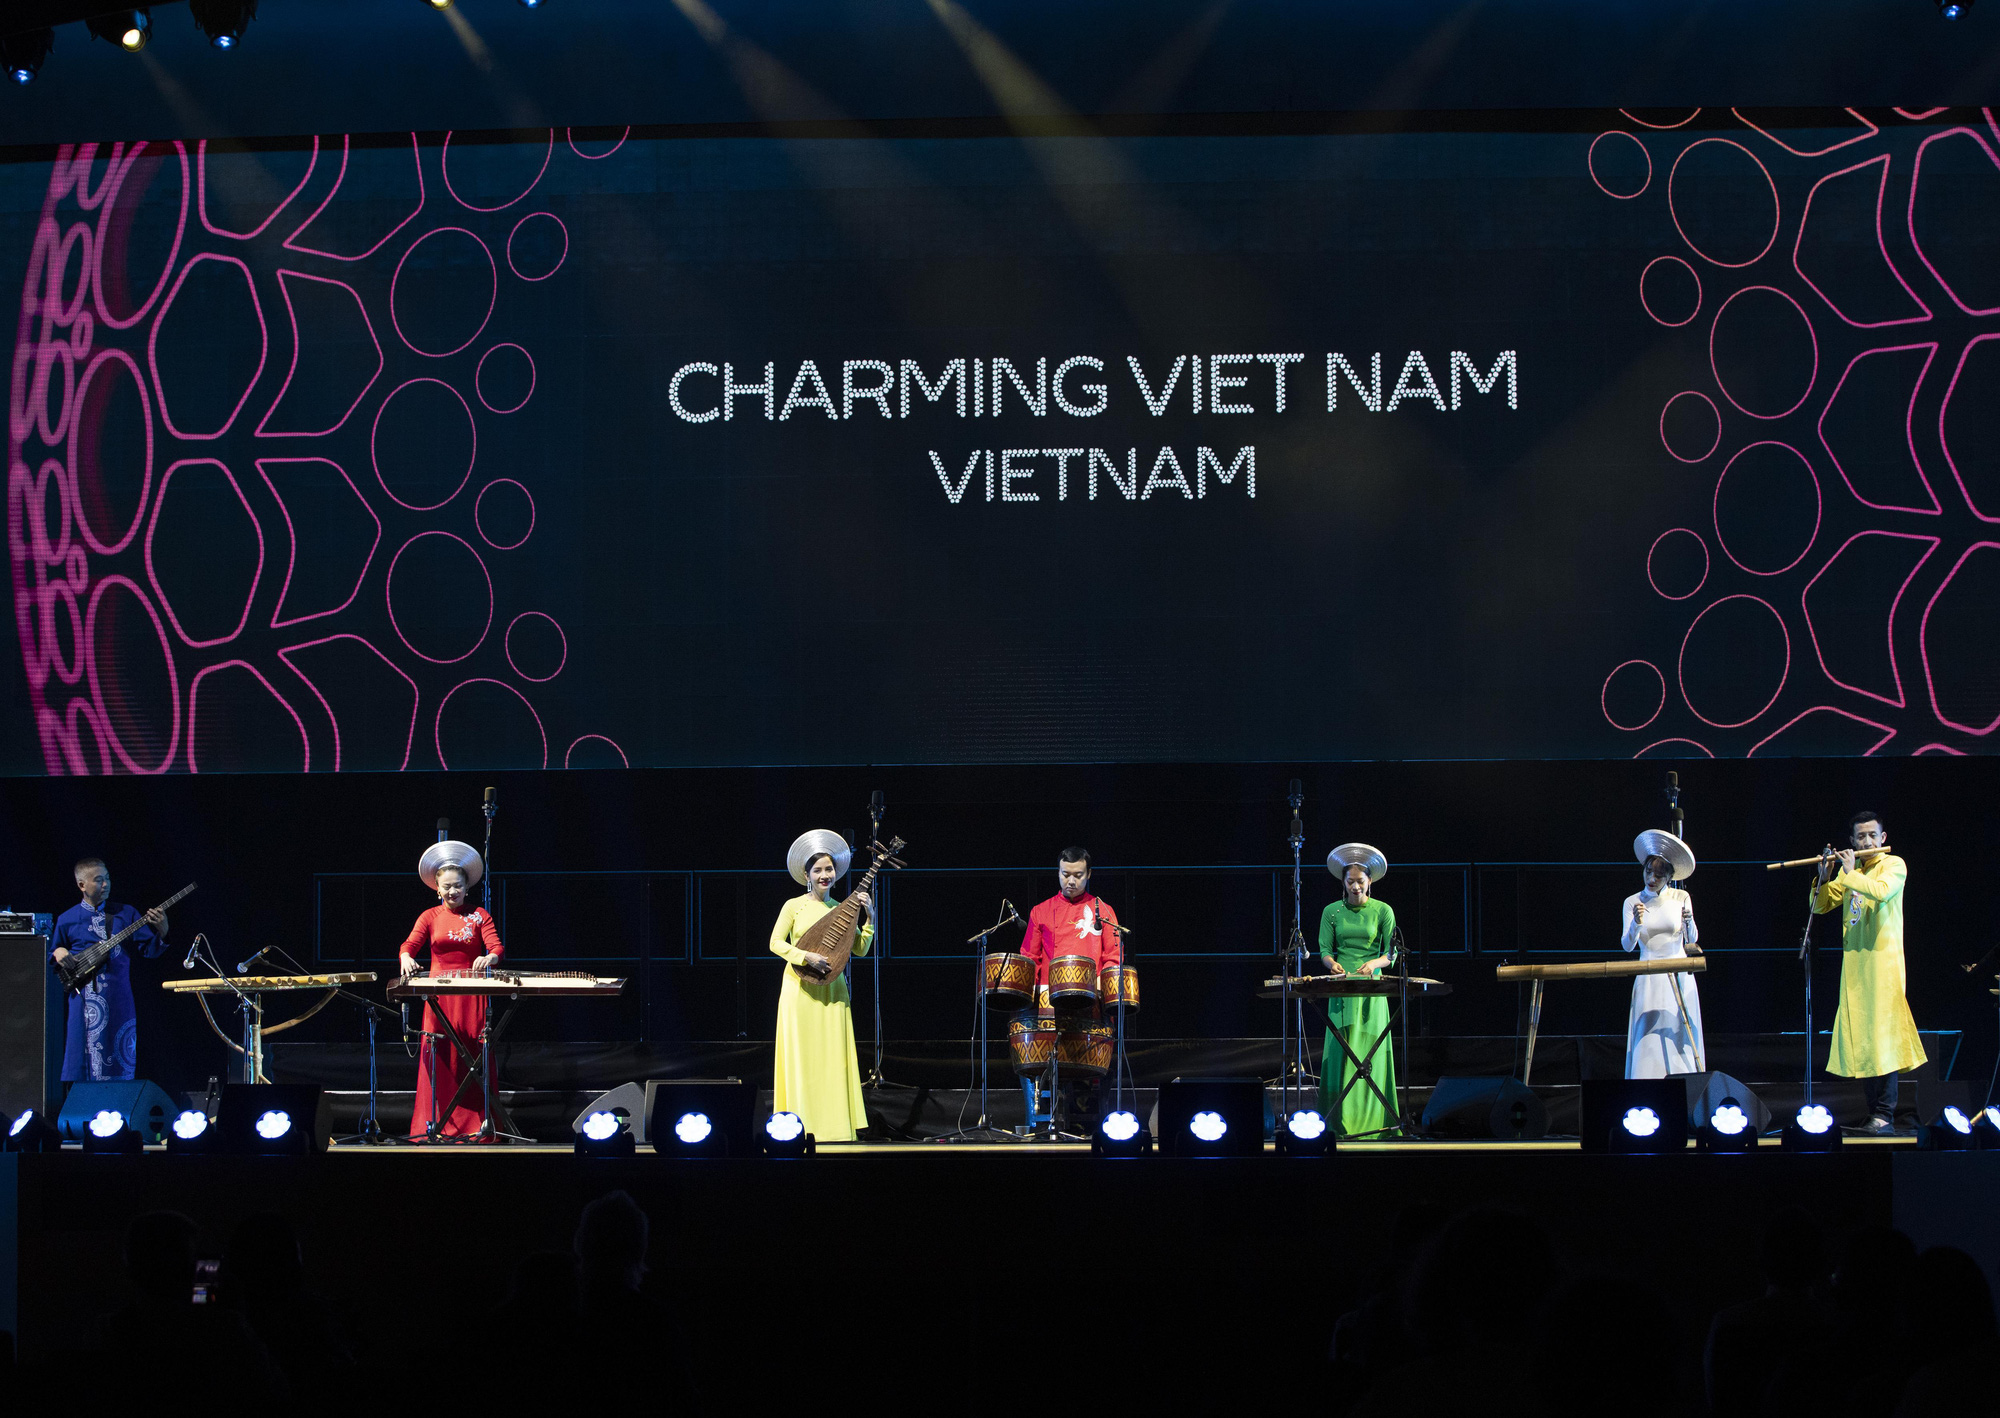 EXPO 2020 Dubai khép lại cùng sự “thăng hoa” của bản sắc văn hóa Việt  - Ảnh 3.